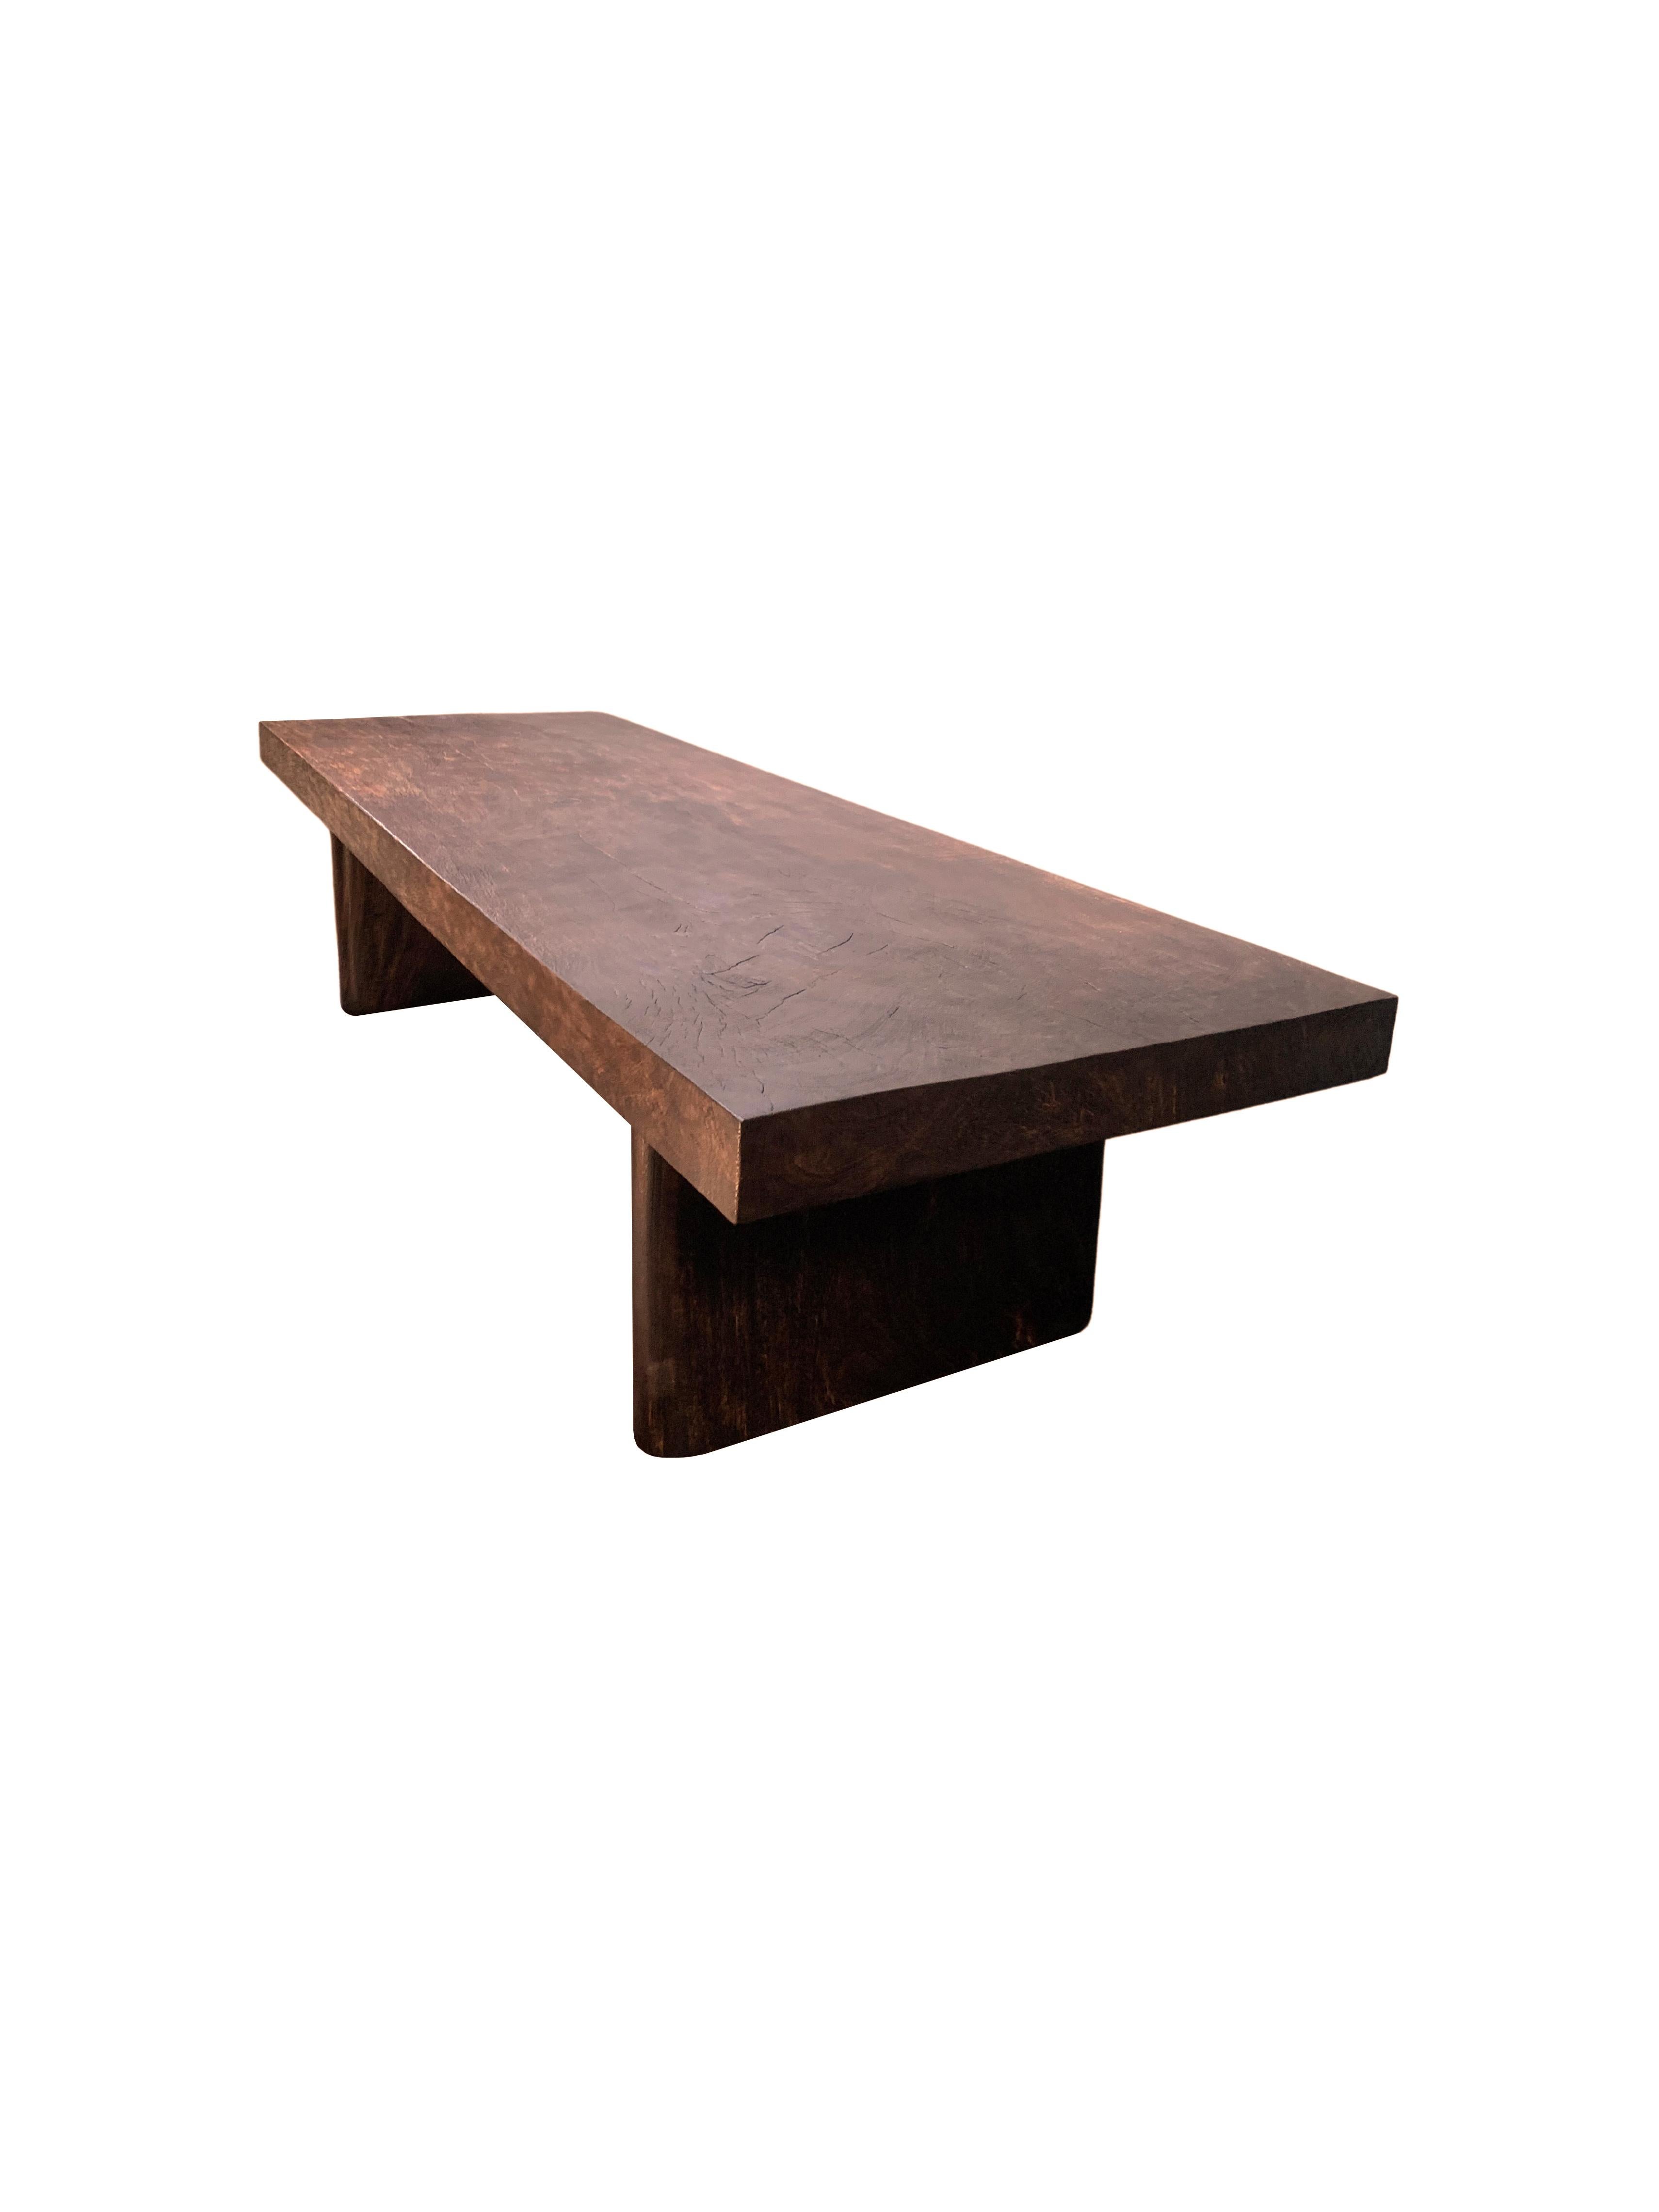 Une table de canapé en bois de manguier massif avec de merveilleuses textures et nuances de bois. Le plateau de la table est fabriqué à partir d'une dalle en bois de manguier. La table est également dotée de deux pieds robustes qui s'étendent sur